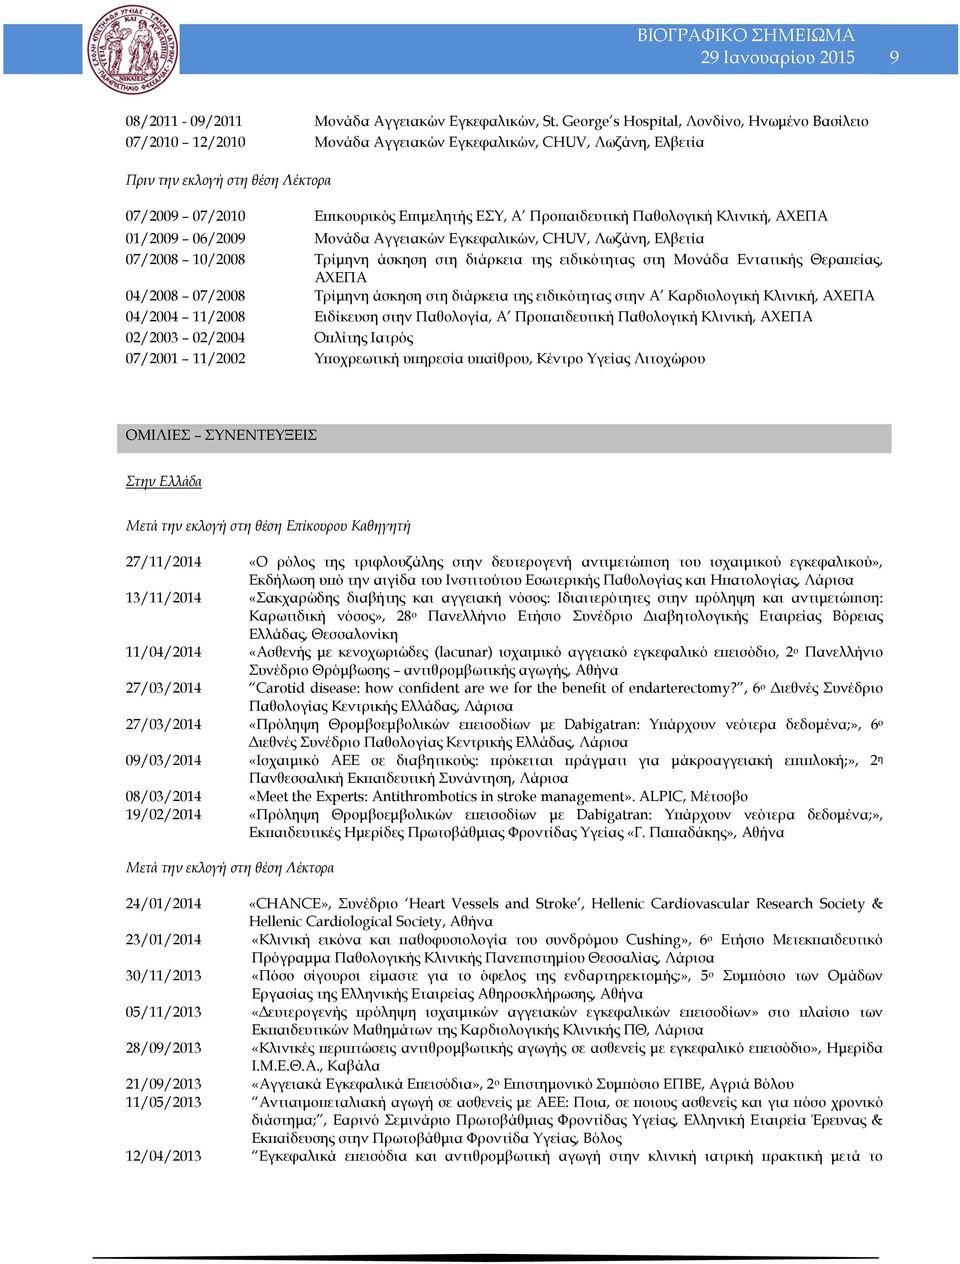 Προπαιδευτική Παθολογική Κλινική, ΑΧΕΠΑ 01/2009 06/2009 Μονάδα Αγγειακών Εγκεφαλικών, CHUV, Λωζάνη, Ελβετία 07/2008 10/2008 Τρίμηνη άσκηση στη διάρκεια της ειδικότητας στη Μονάδα Εντατικής Θεραπείας,